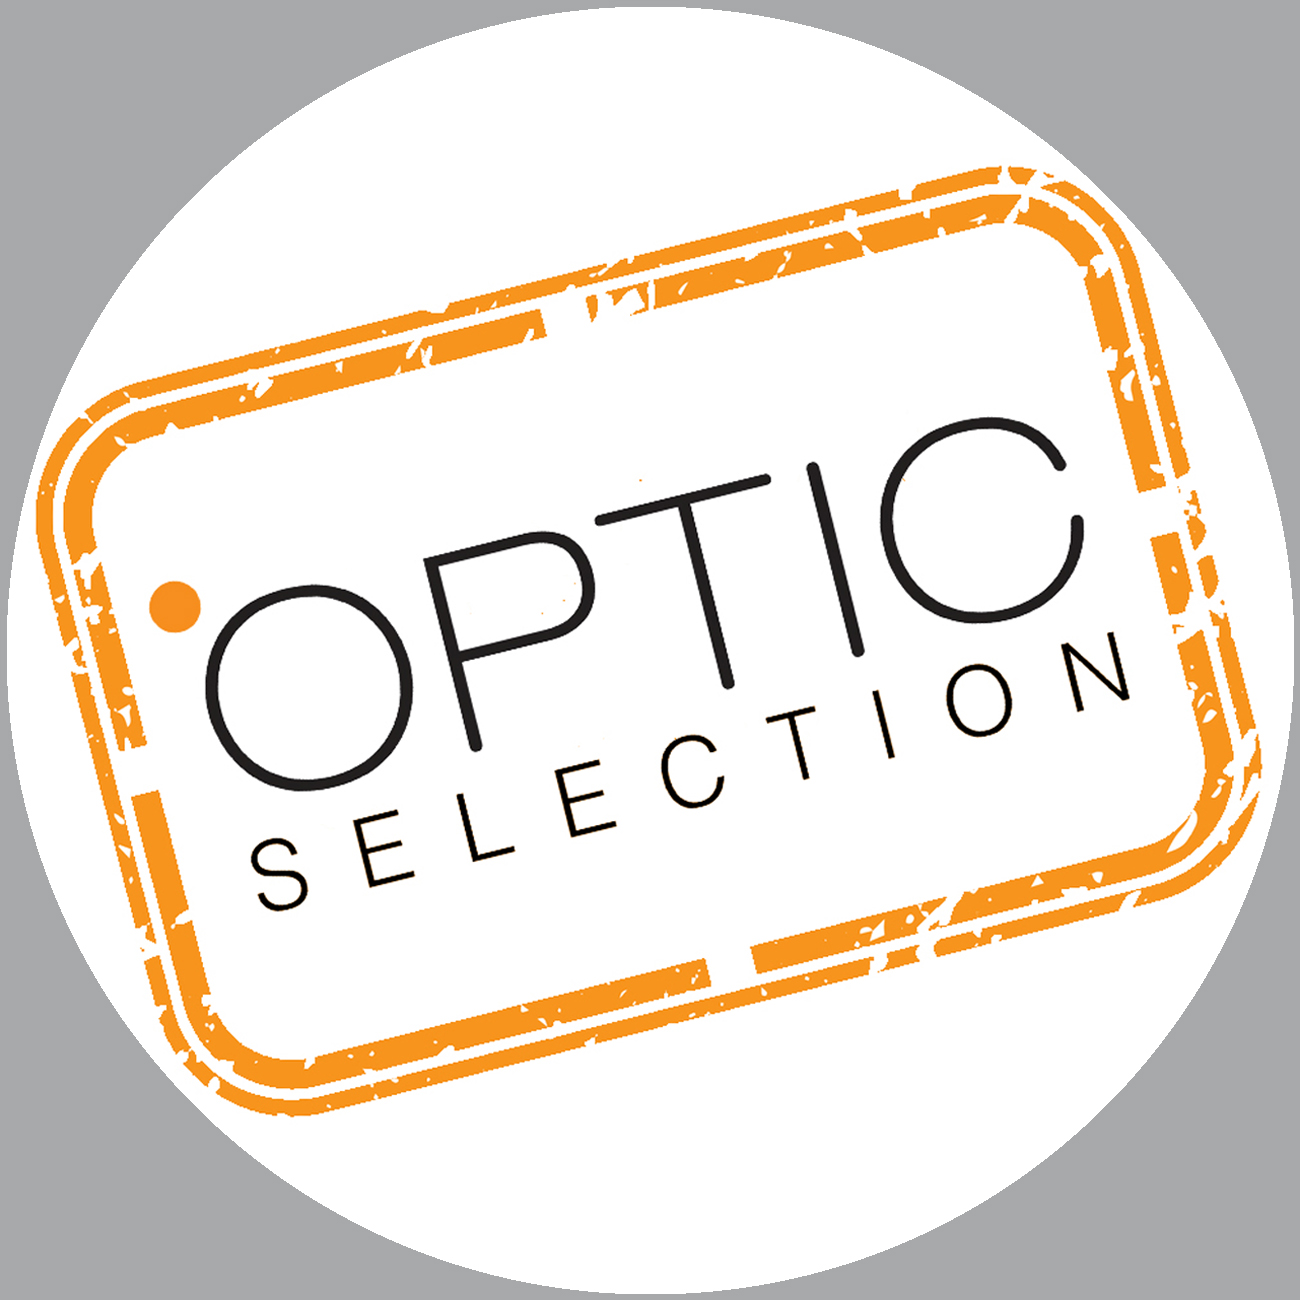 gafas optic selection